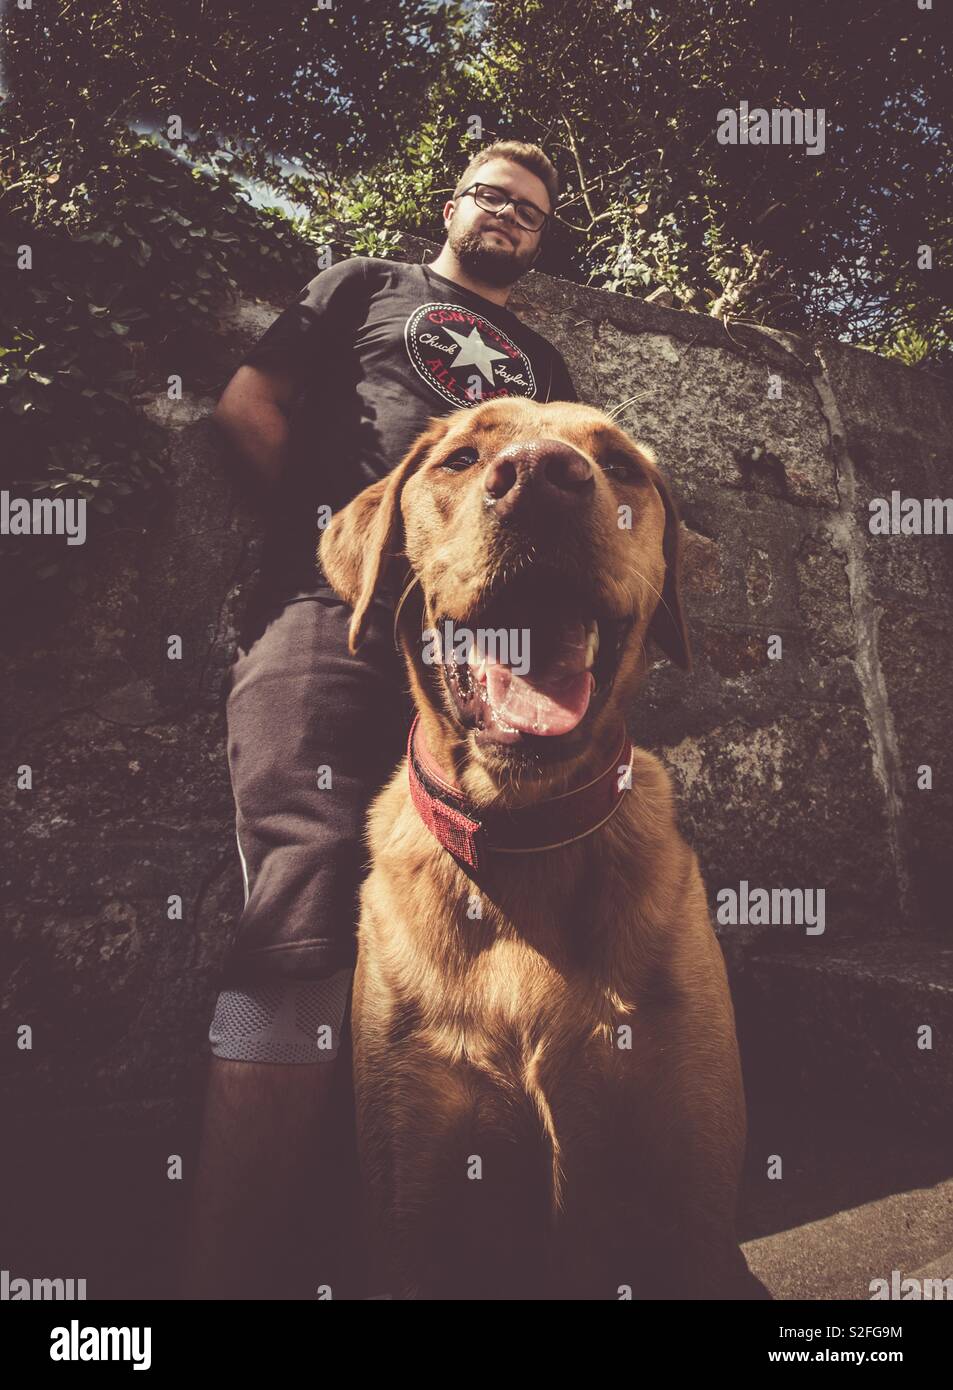 Ein junger Mann mit einem Bart steht hinter seinen großen Hund auf den  Straßen in einem niedrigen Winkel der Hipster und harte Rapper  Stockfotografie - Alamy